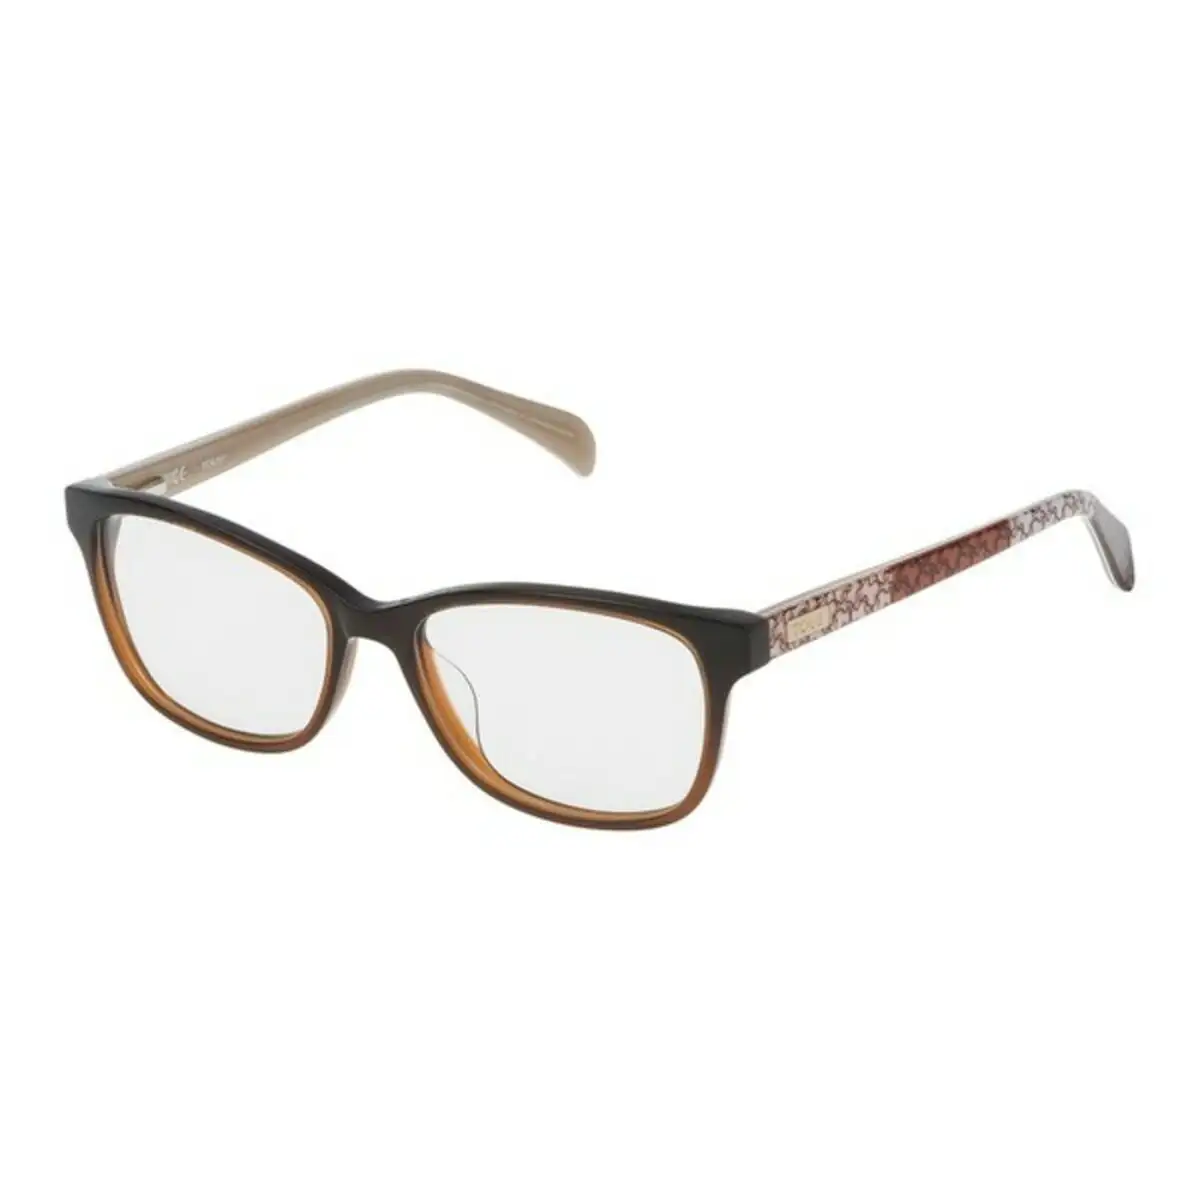 Monture de lunettes femme tous vto9305206pb 52 mm marron o 52 mm _7787. DIAYTAR SENEGAL - L'Art de Magasiner sans Limites. Naviguez à travers notre collection diversifiée pour trouver des produits qui élargiront vos horizons shopping.